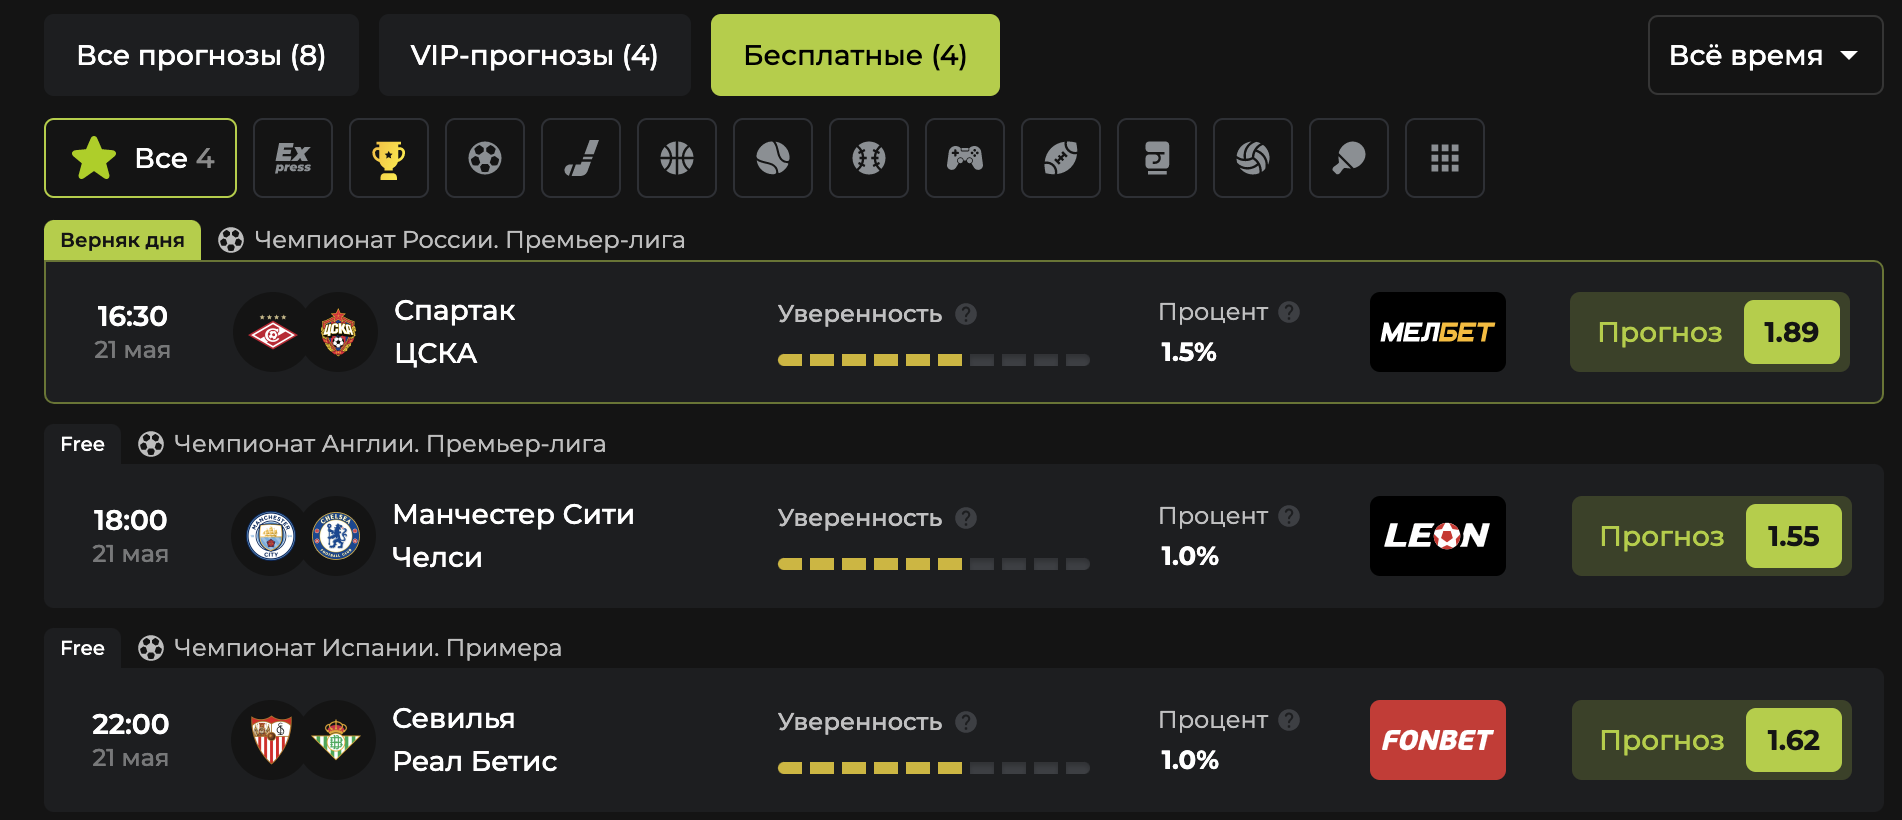 Бесплатные прогнозы на bets-pro.ru